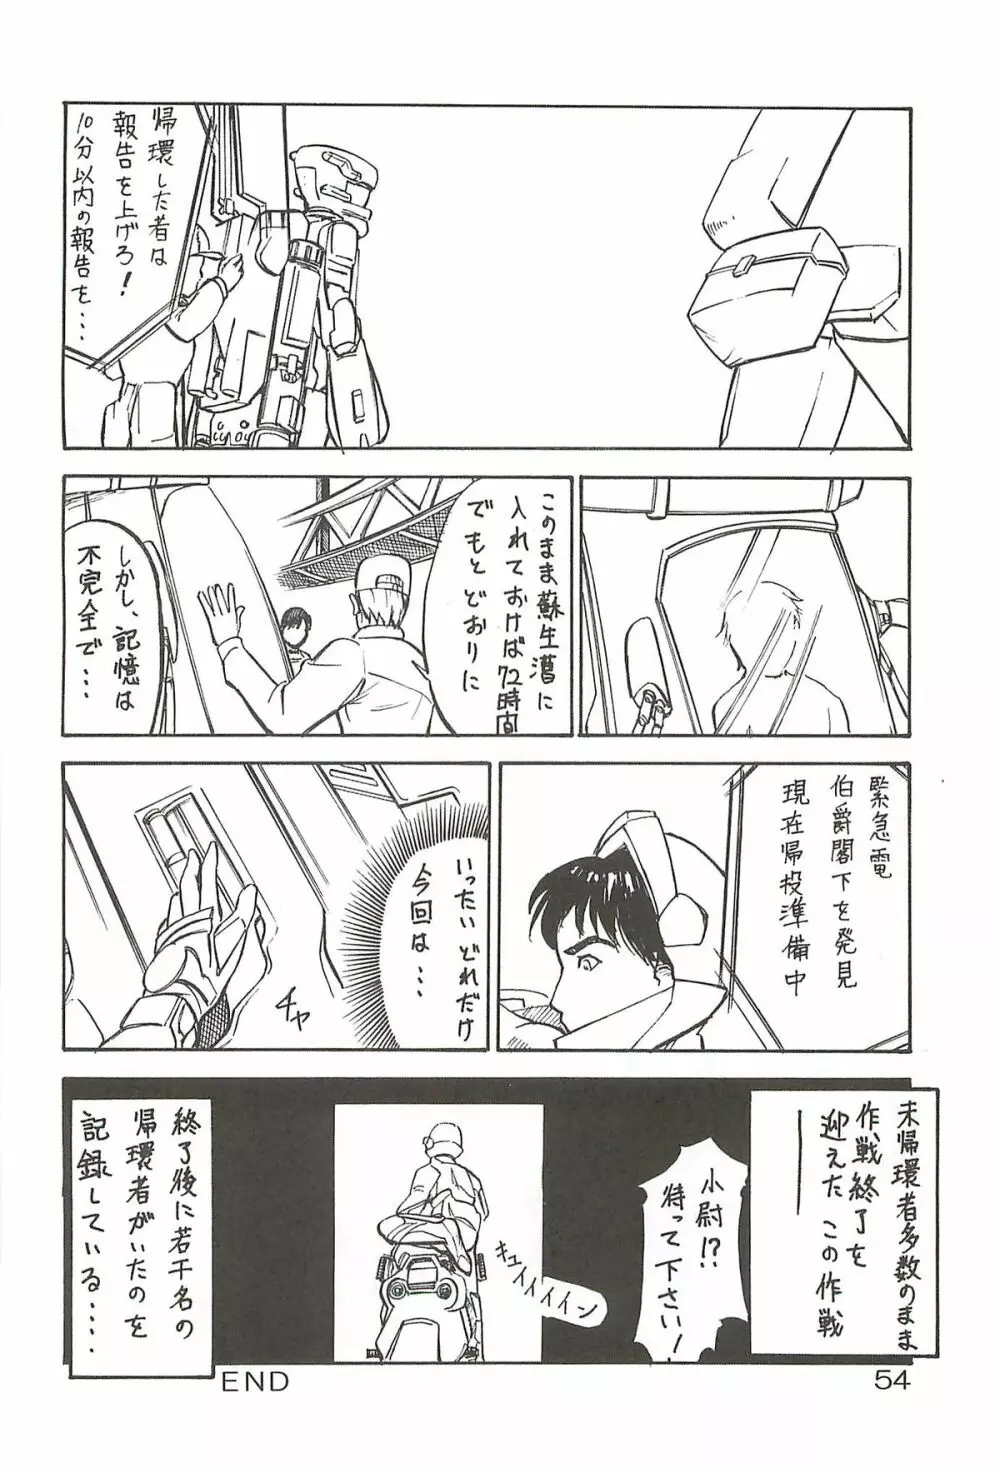 追放覚悟 Special edition Phase1 Page.53